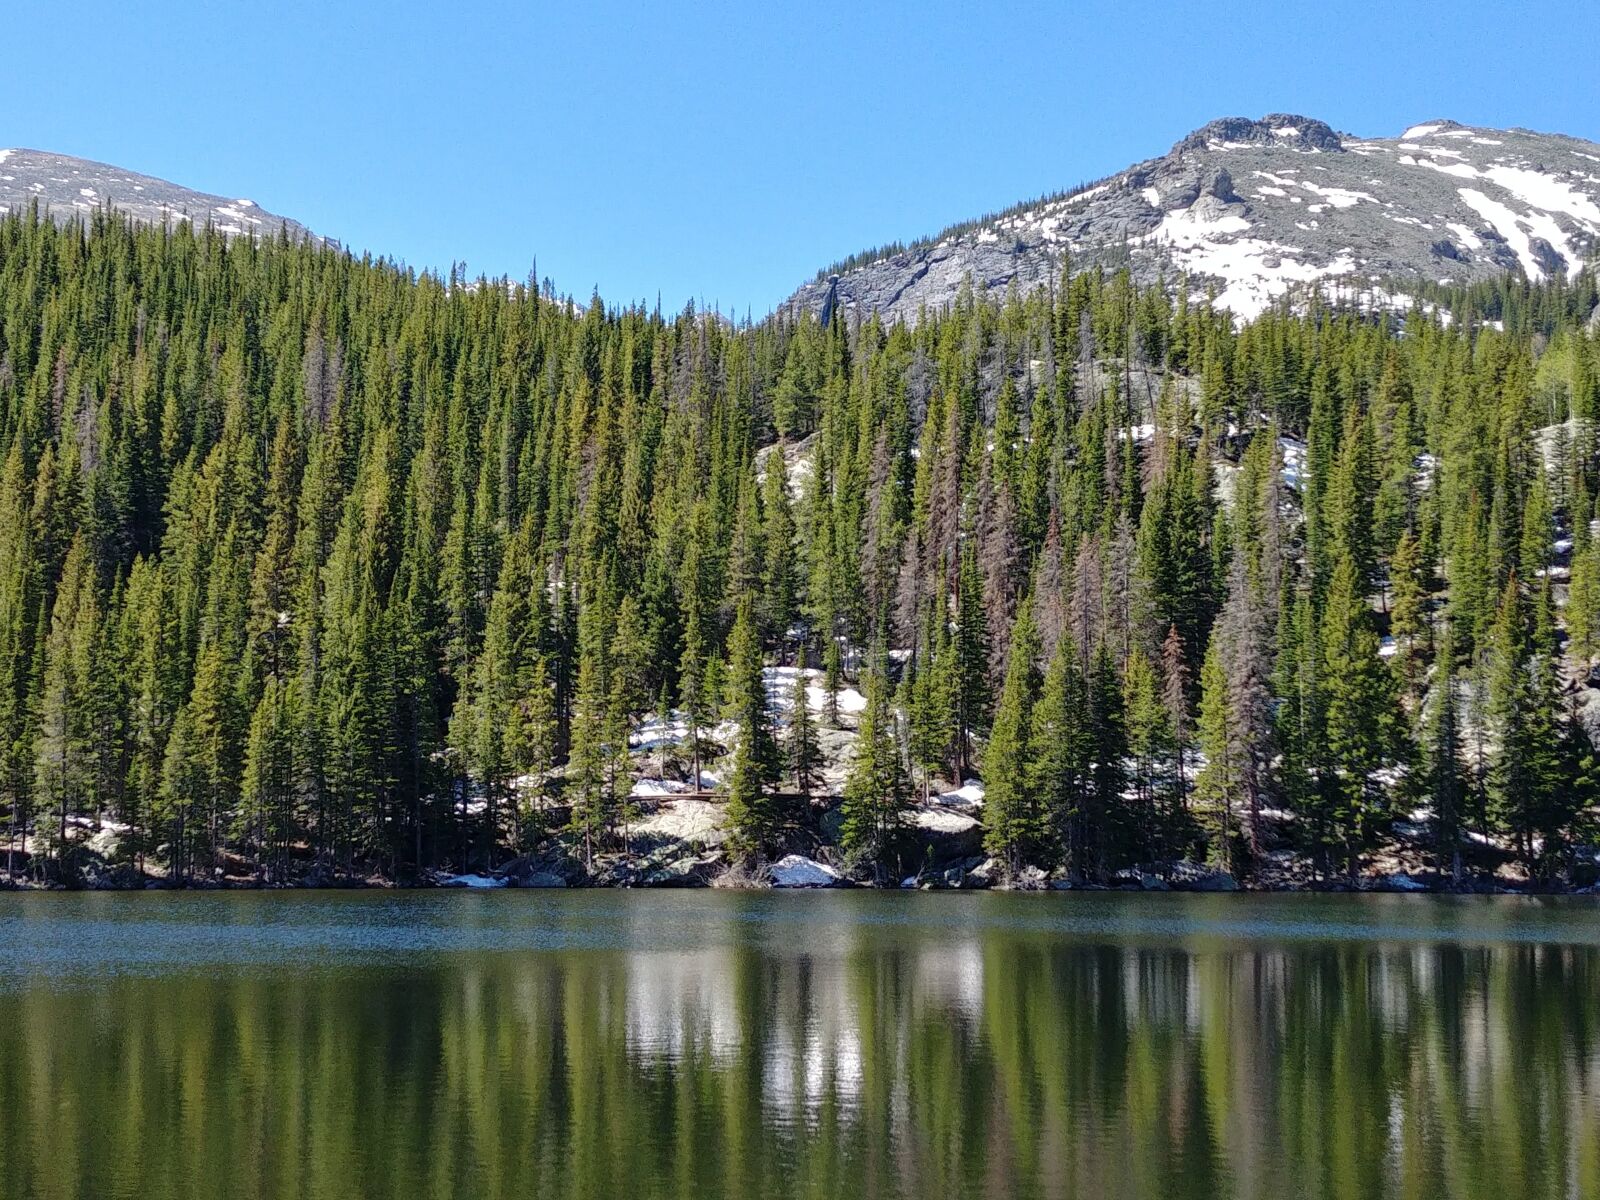 LG G6 sample photo. Bear lake, colorado, nature photography